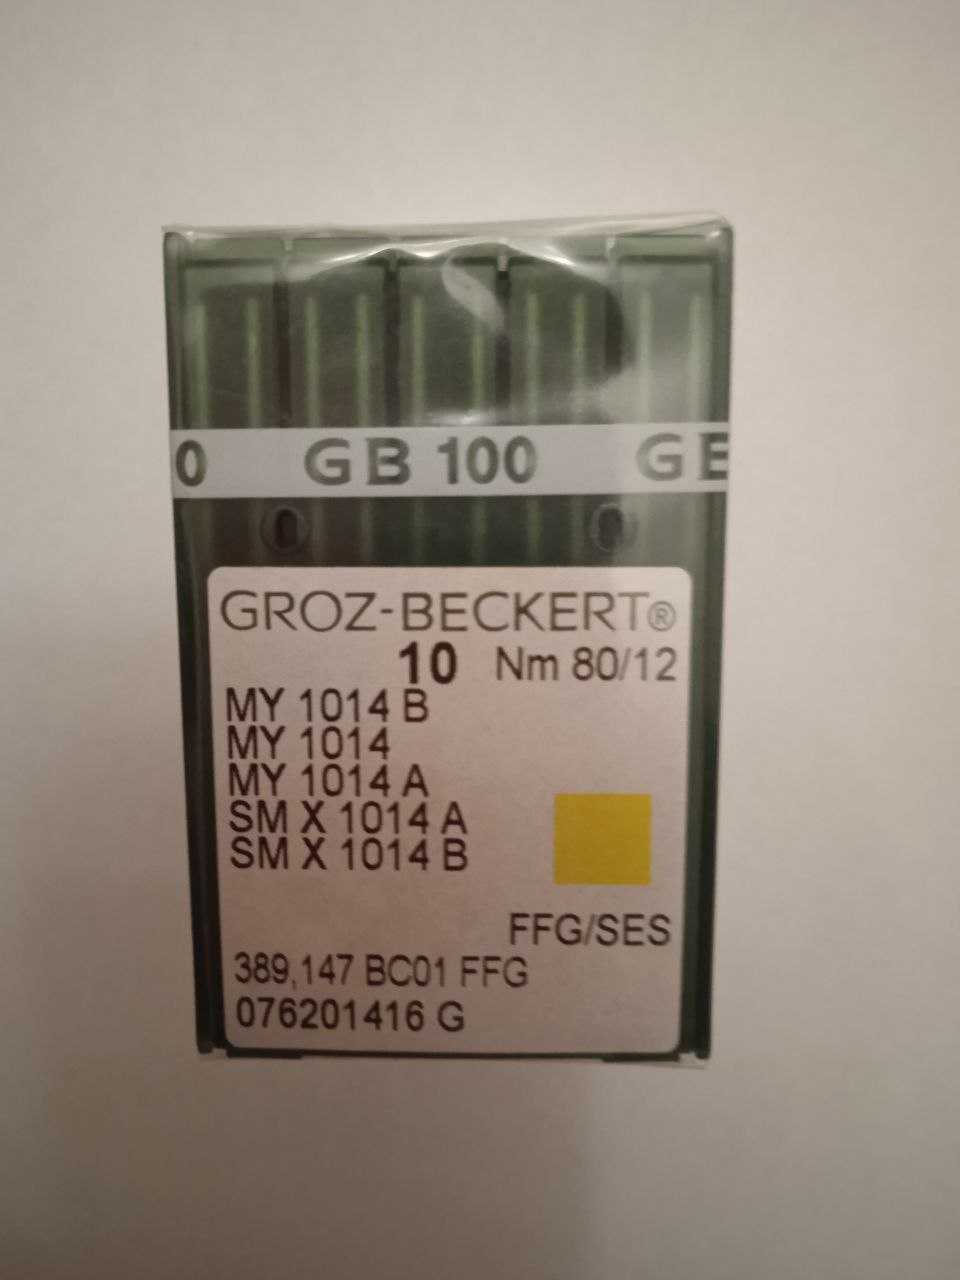 Игла швейная Groz-Beckert MY 1014B, Nm 80/12 промышленных машин.